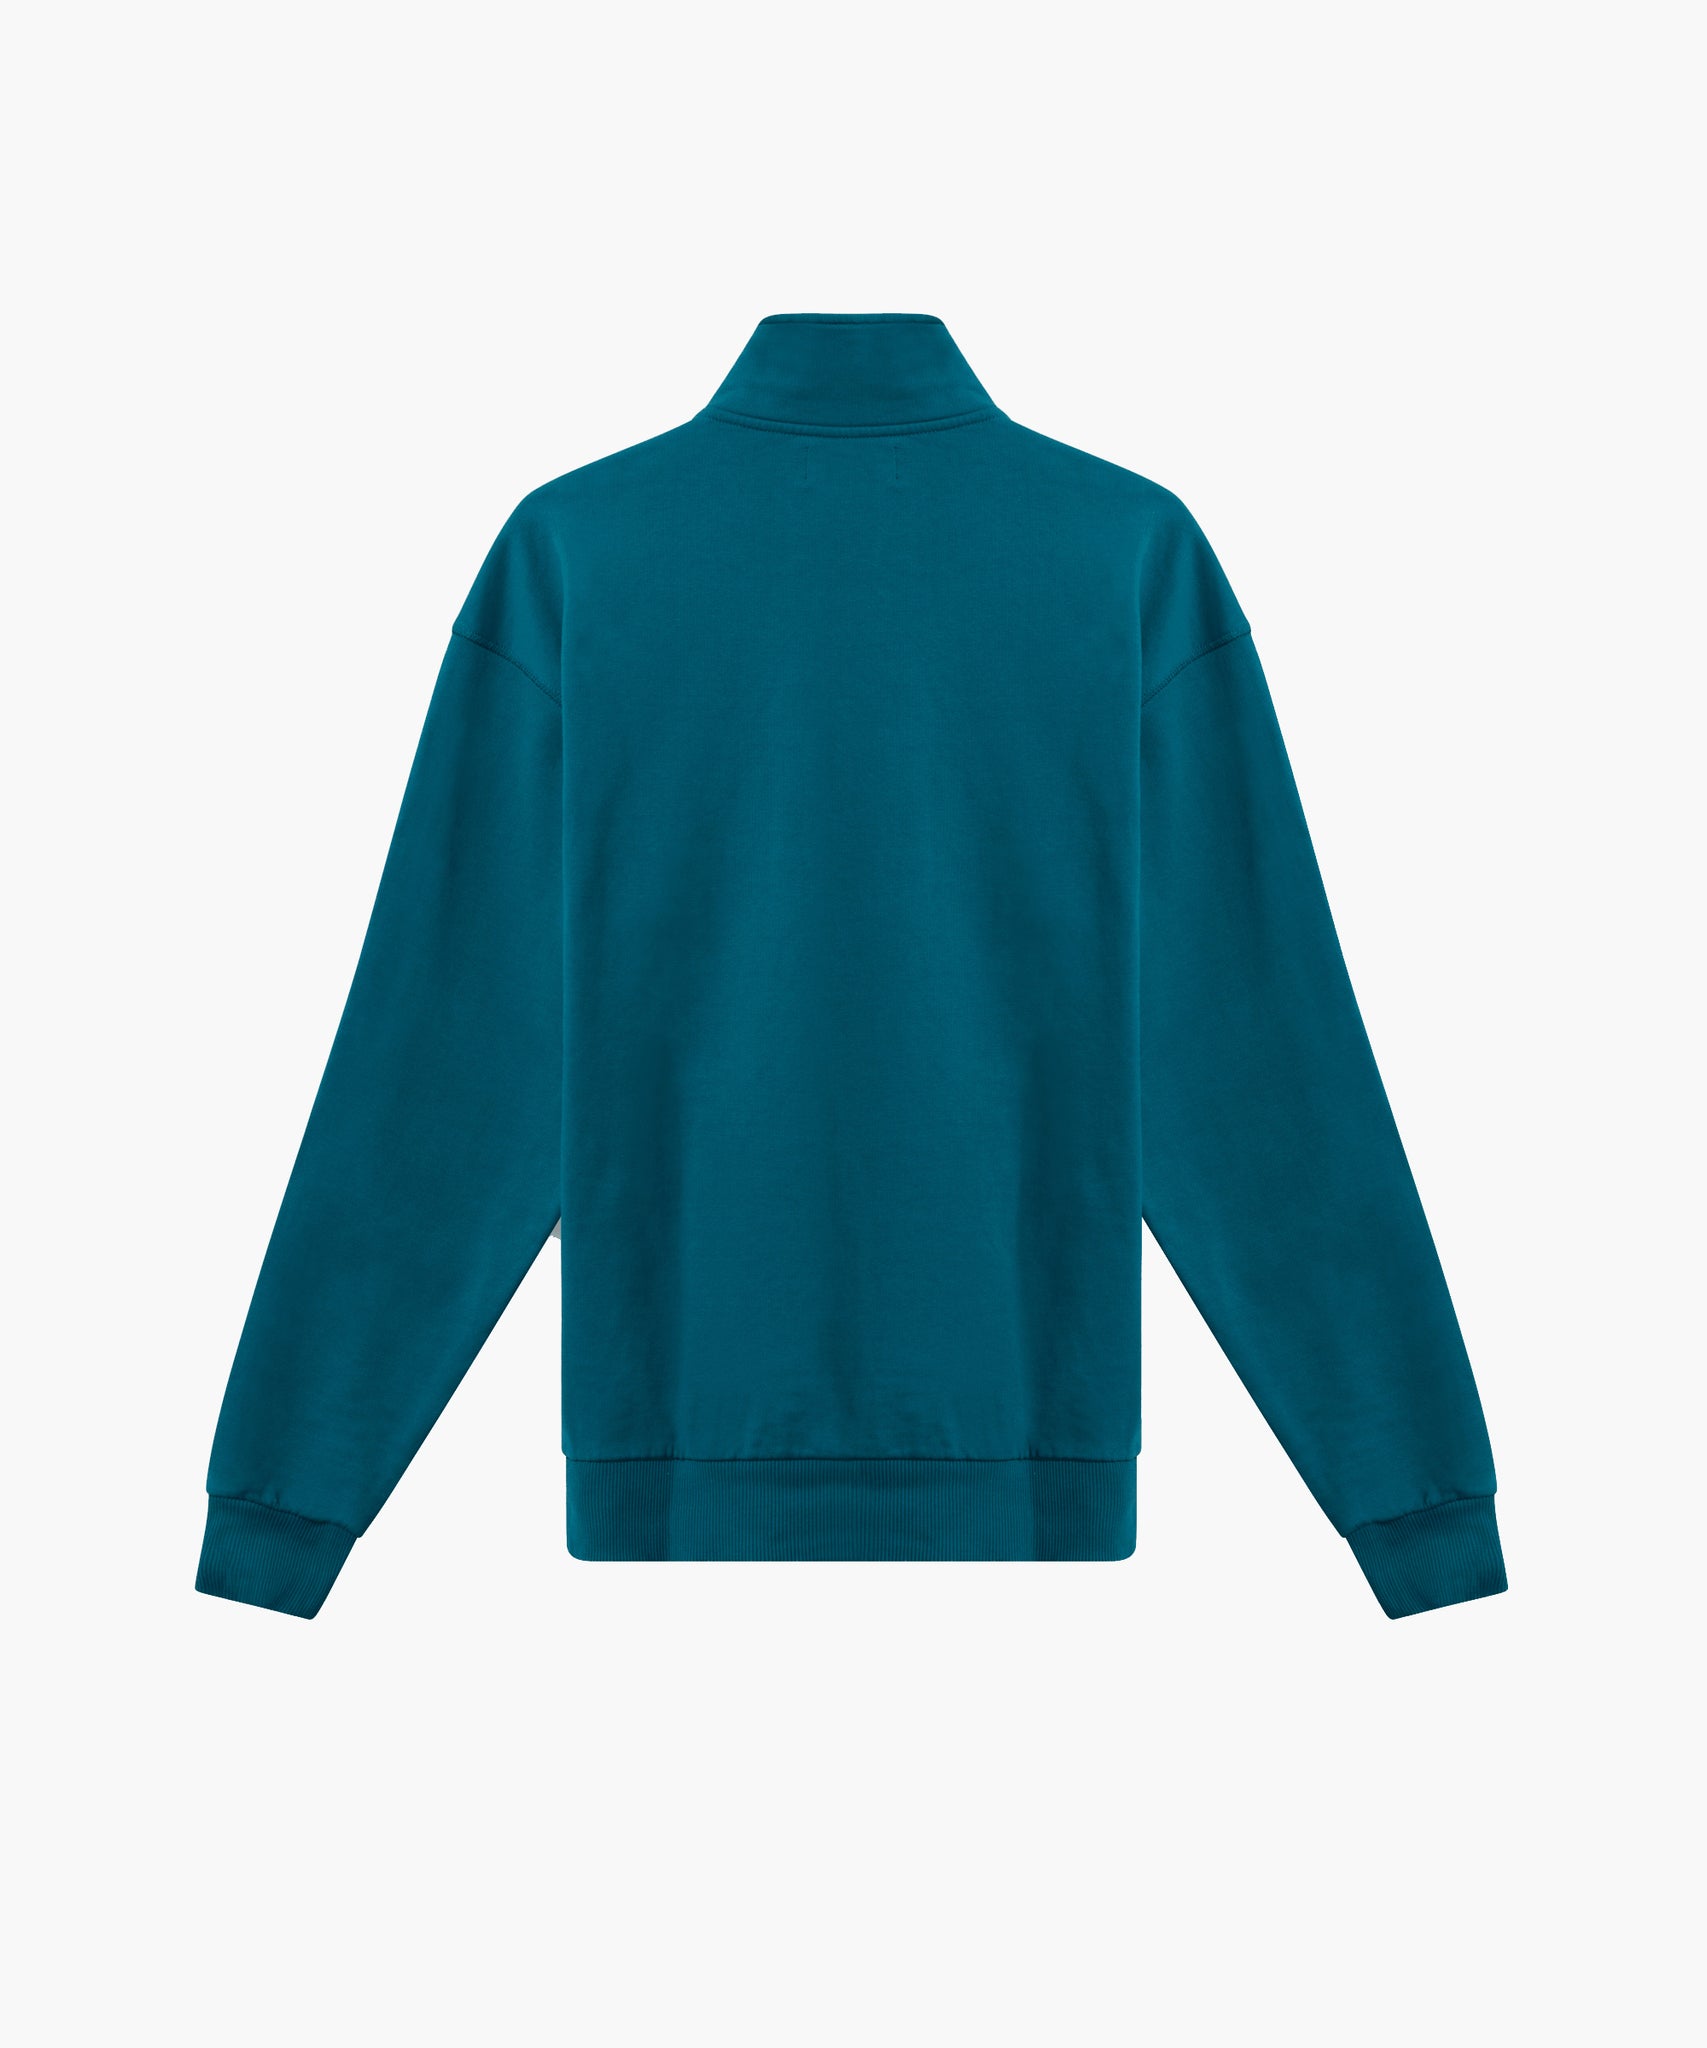 Vintage Amendi Sweatshirt - Turqoise